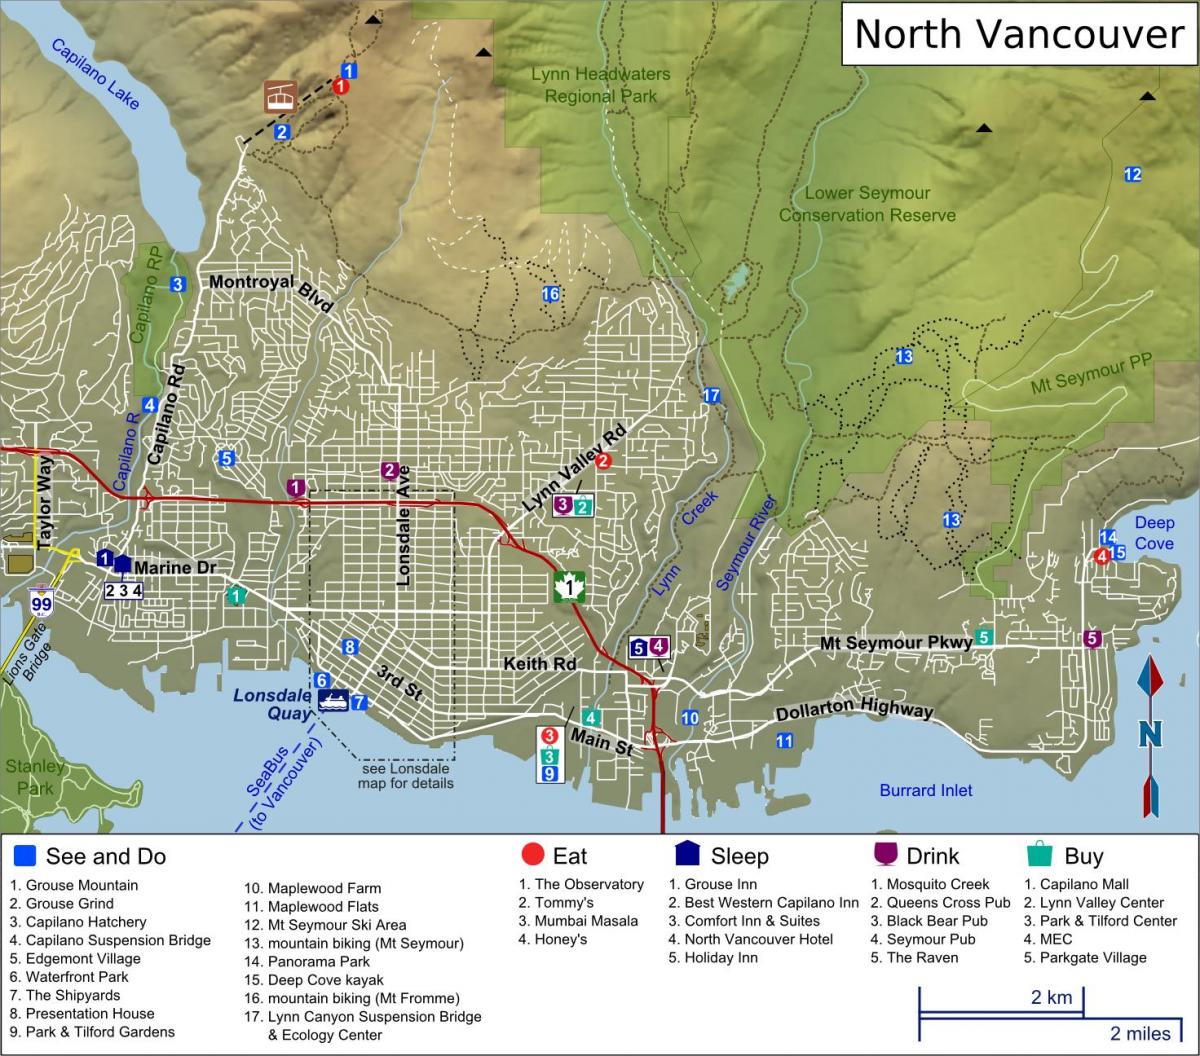 Картицу северној обали Ванкувера